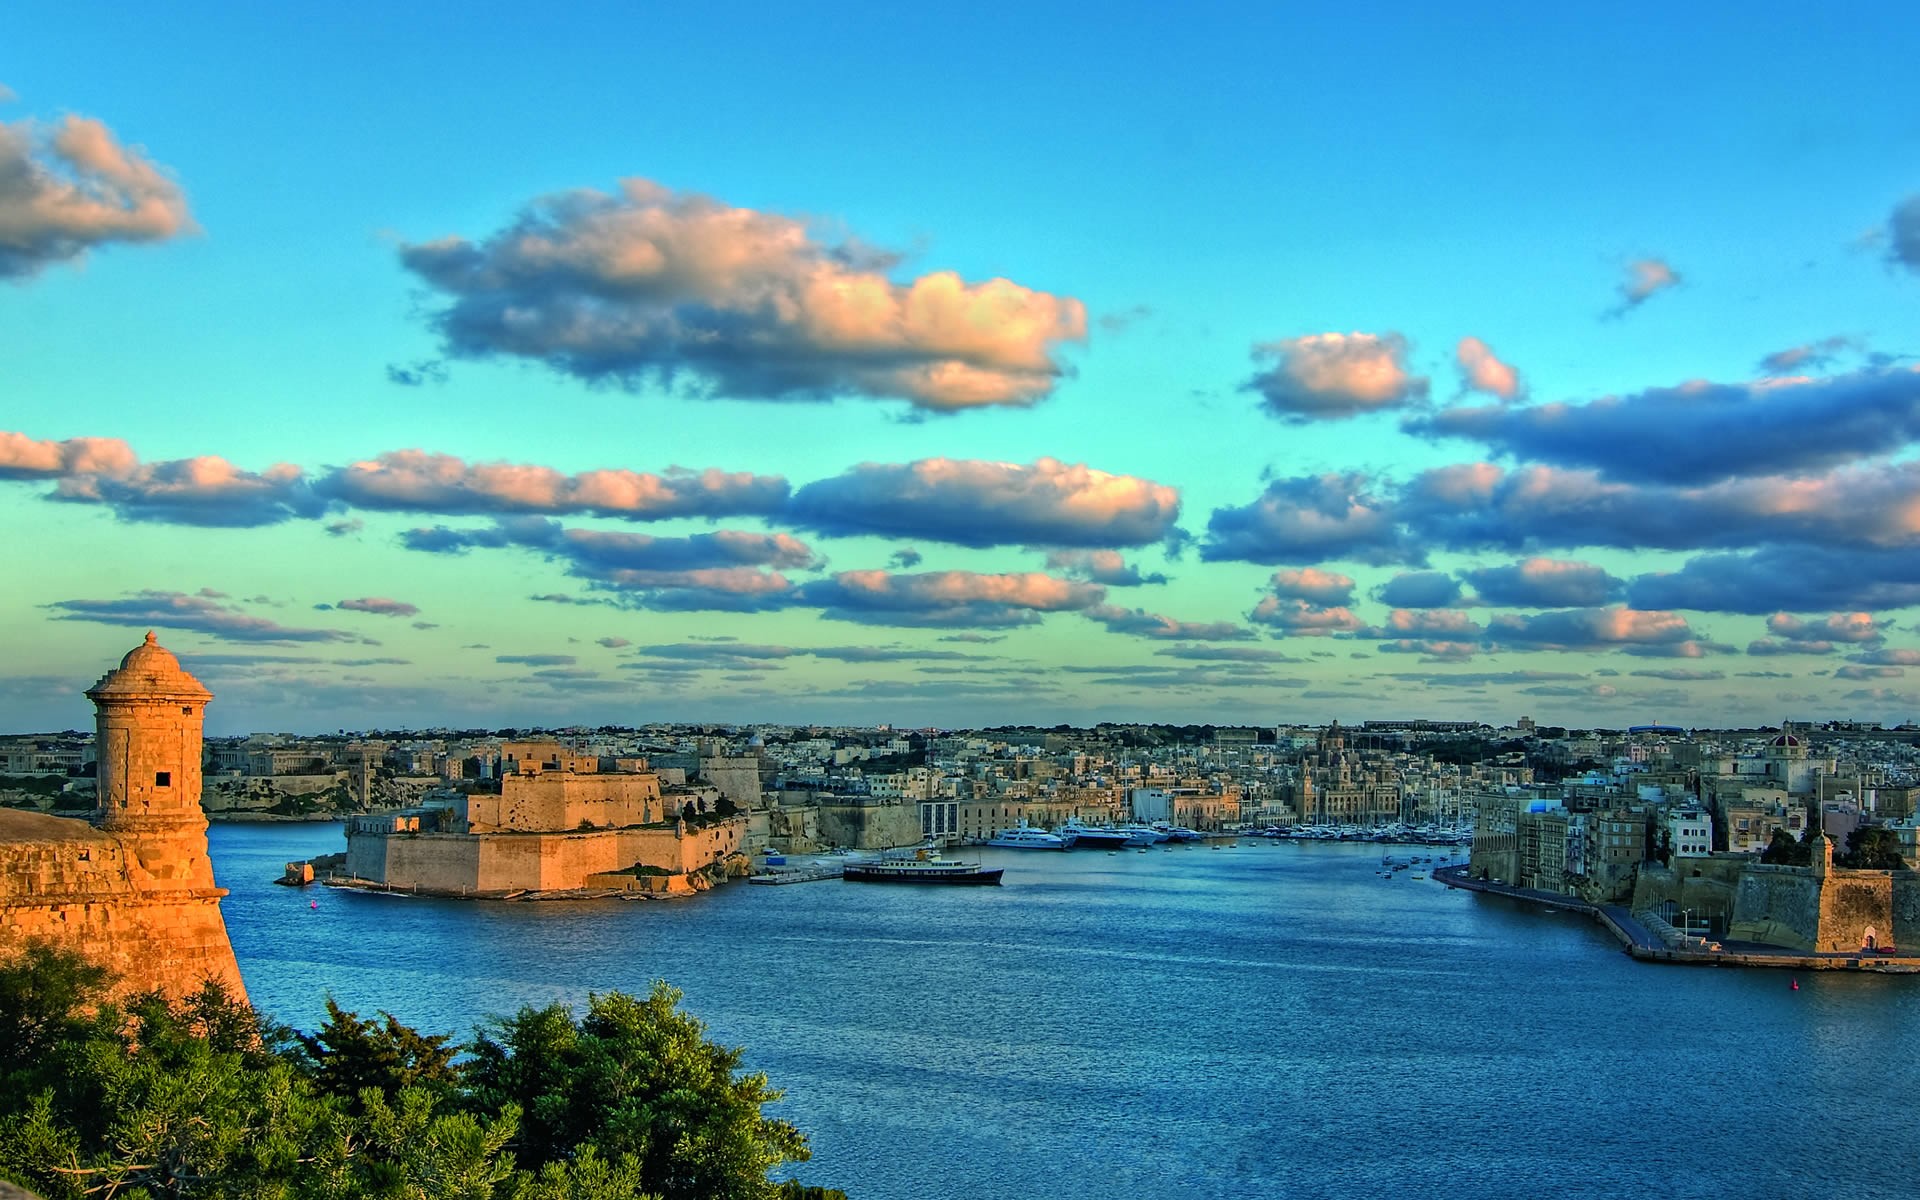 Valleta's impressive port entrance